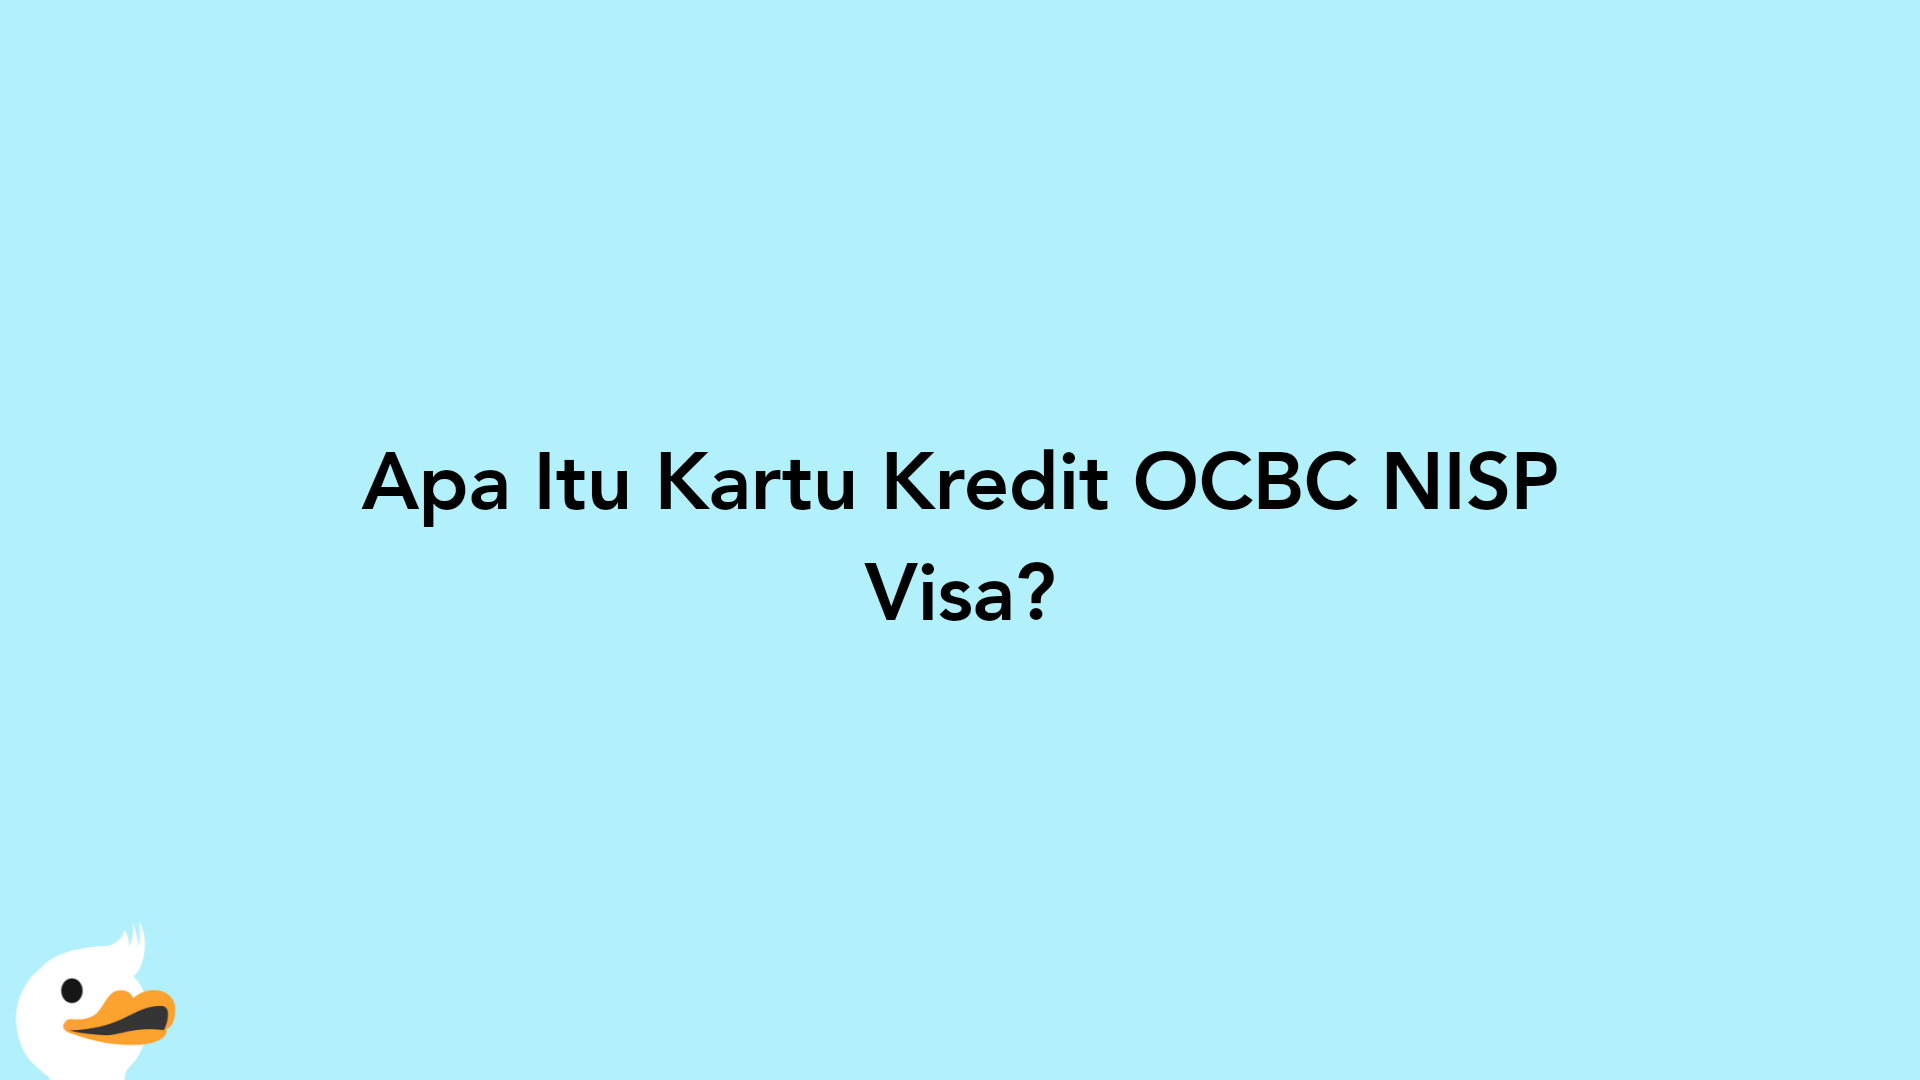 Apa Itu Kartu Kredit OCBC NISP Visa?